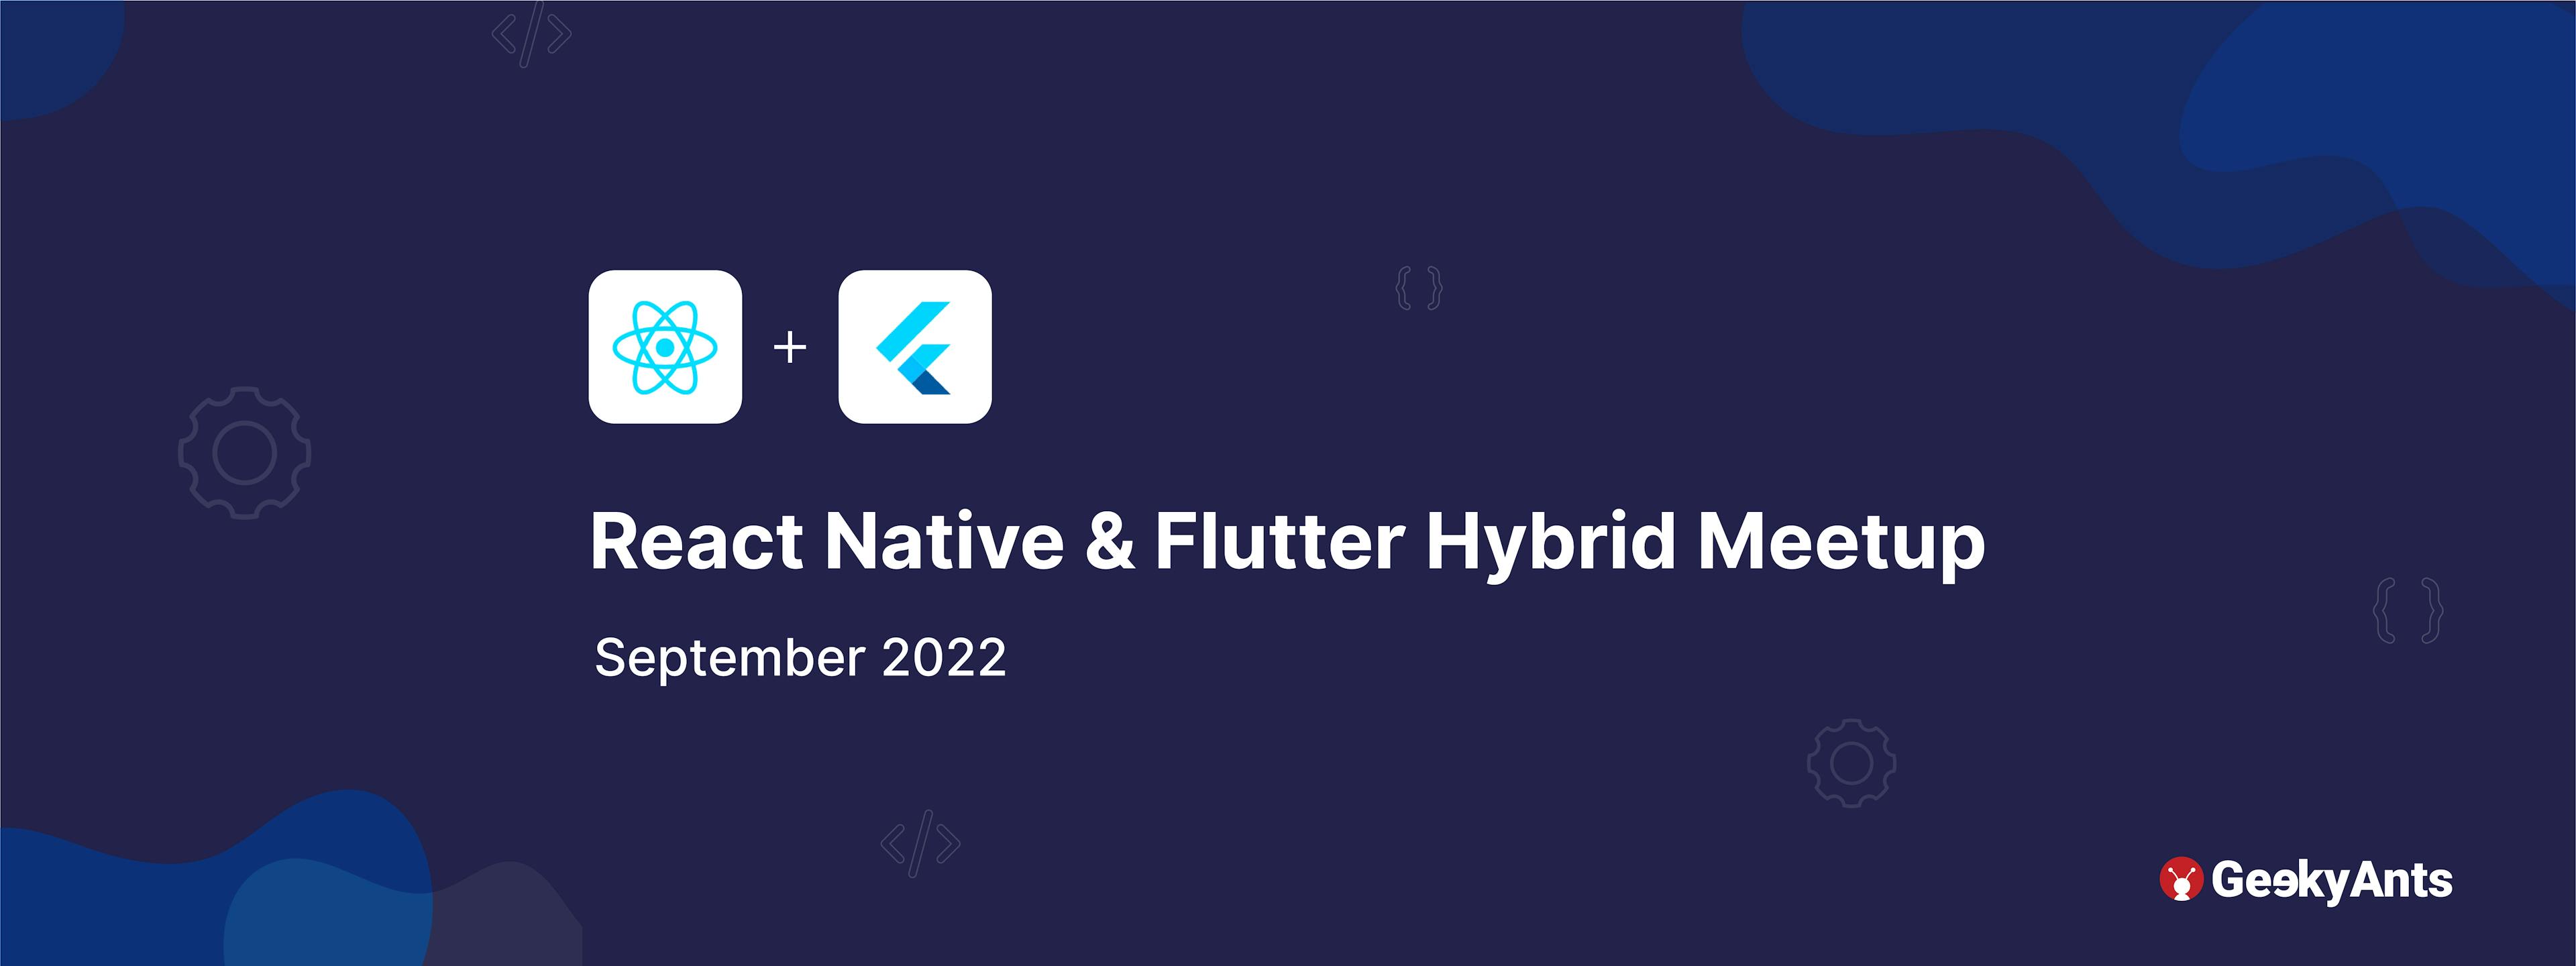 Event Recap: React Native & Flutter Hybrid Meetup